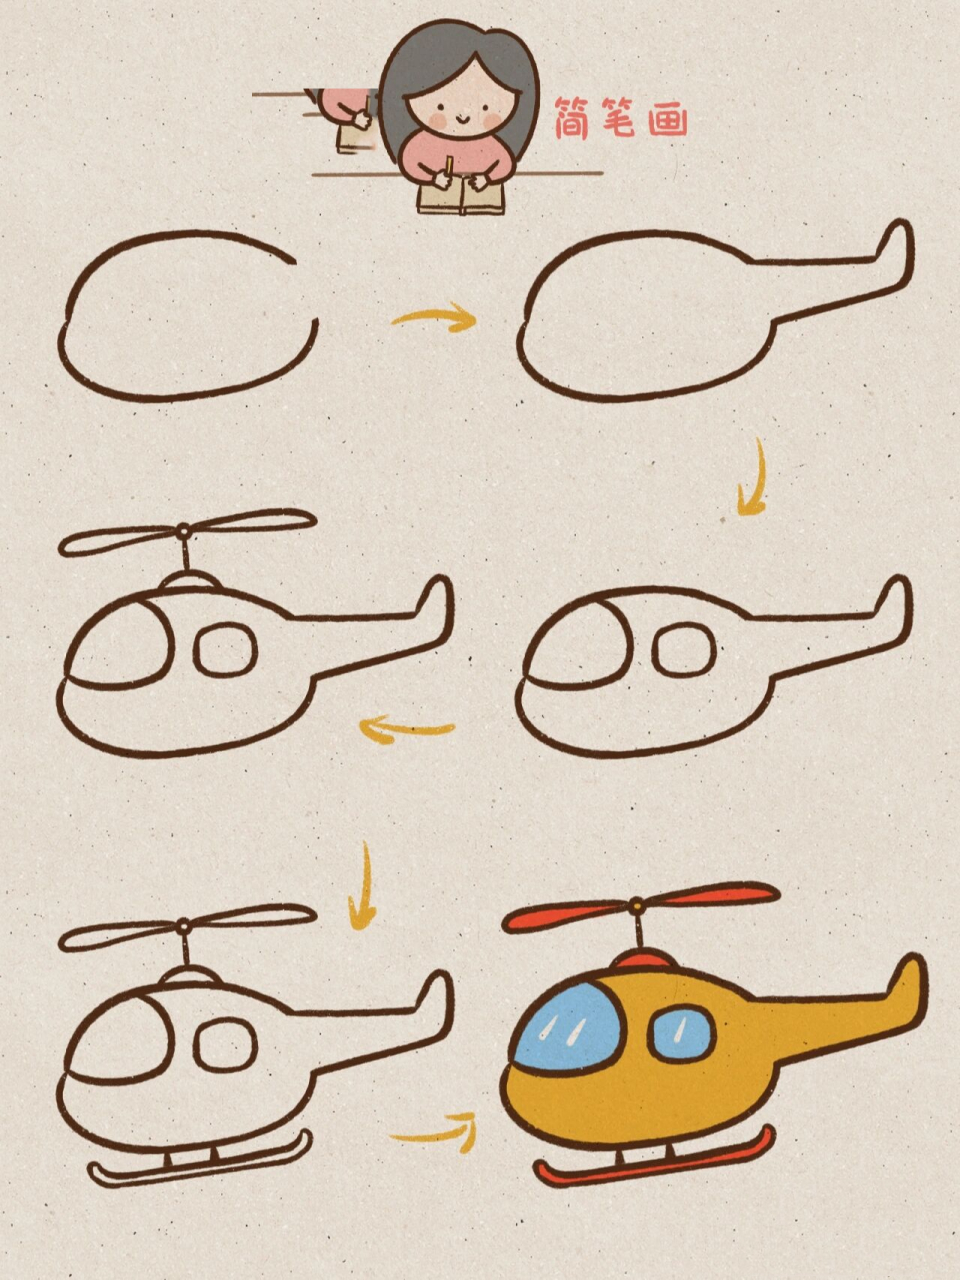 简单的直升机怎么画?图片